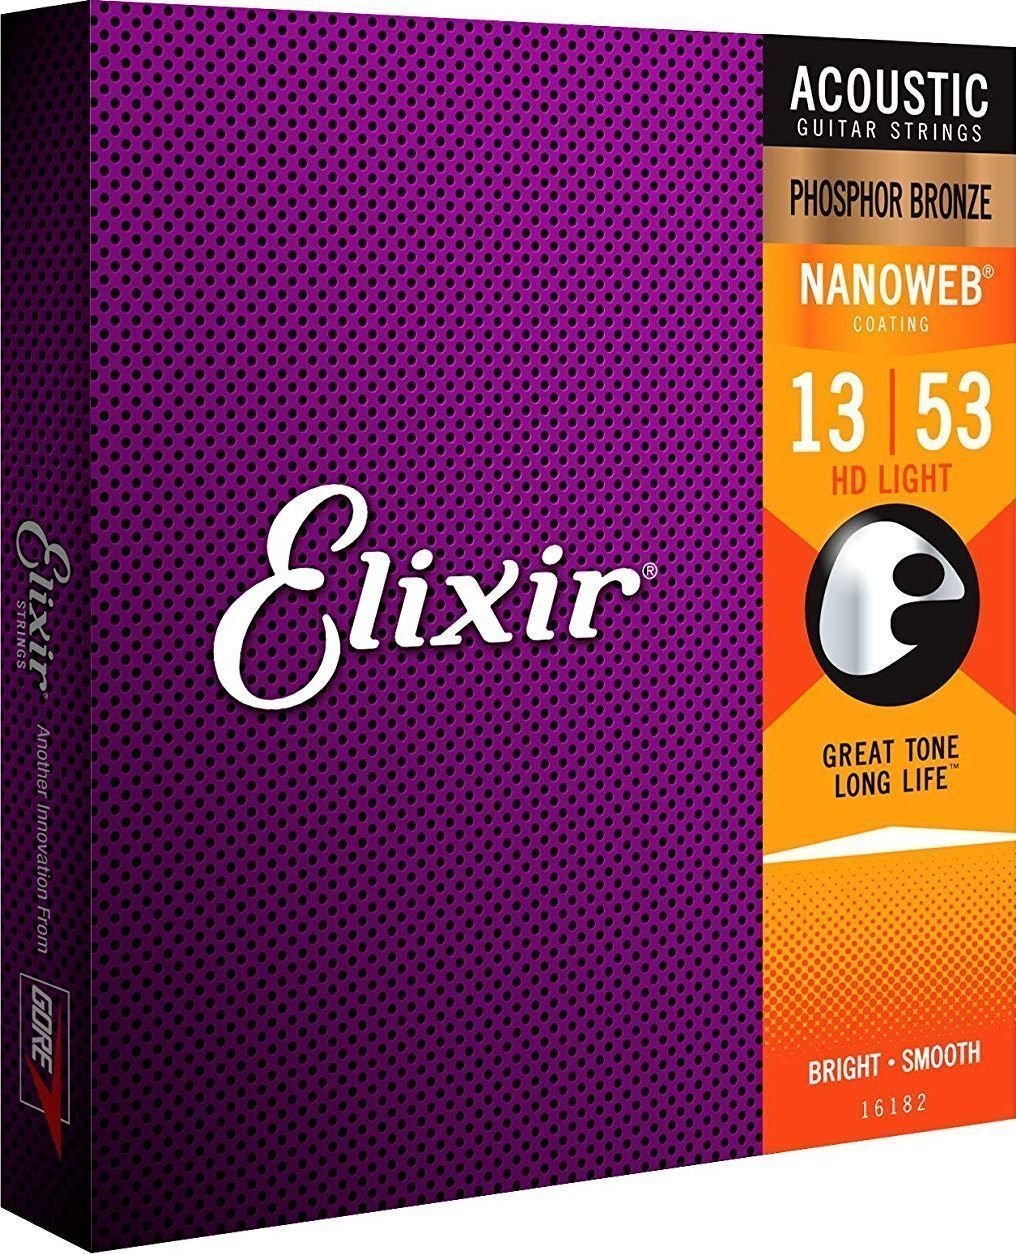 Струни за акустична китара Elixir 16182 Nanoweb 13-53